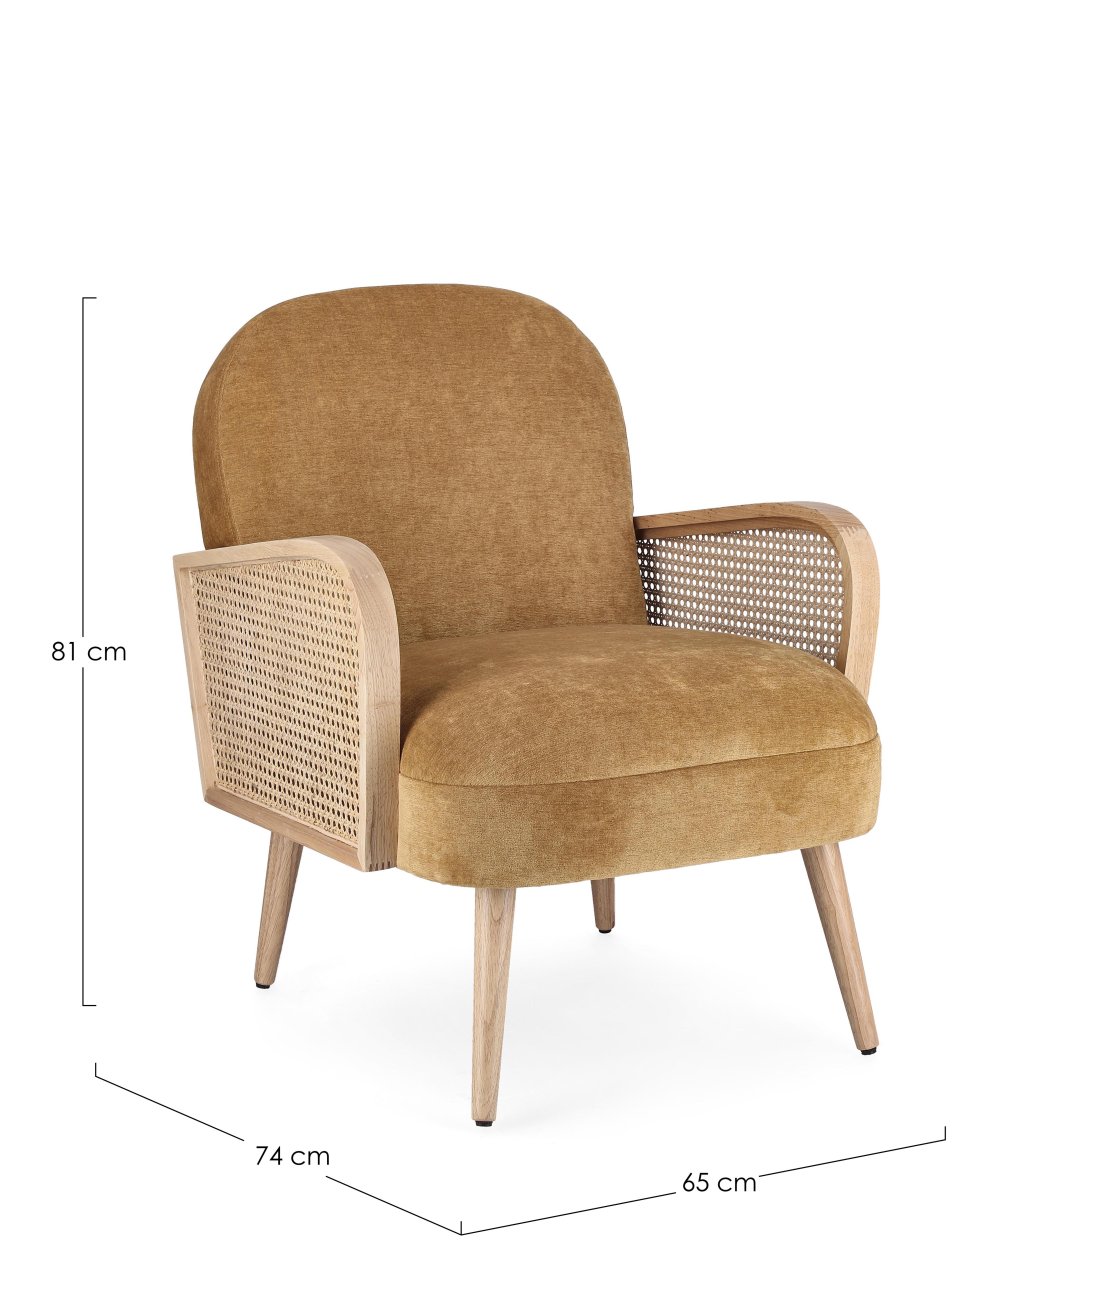 Der Sessel Dalida überzeugt mit seinem modernen Stil. Gefertigt wurde er aus einem Stoff-Bezug, welcher einen Senf Farbton besitzt. Das Gestell ist aus Kautschukholz und hat eine natürliche Farbe. Der Sessel verfügt über eine Armlehne.